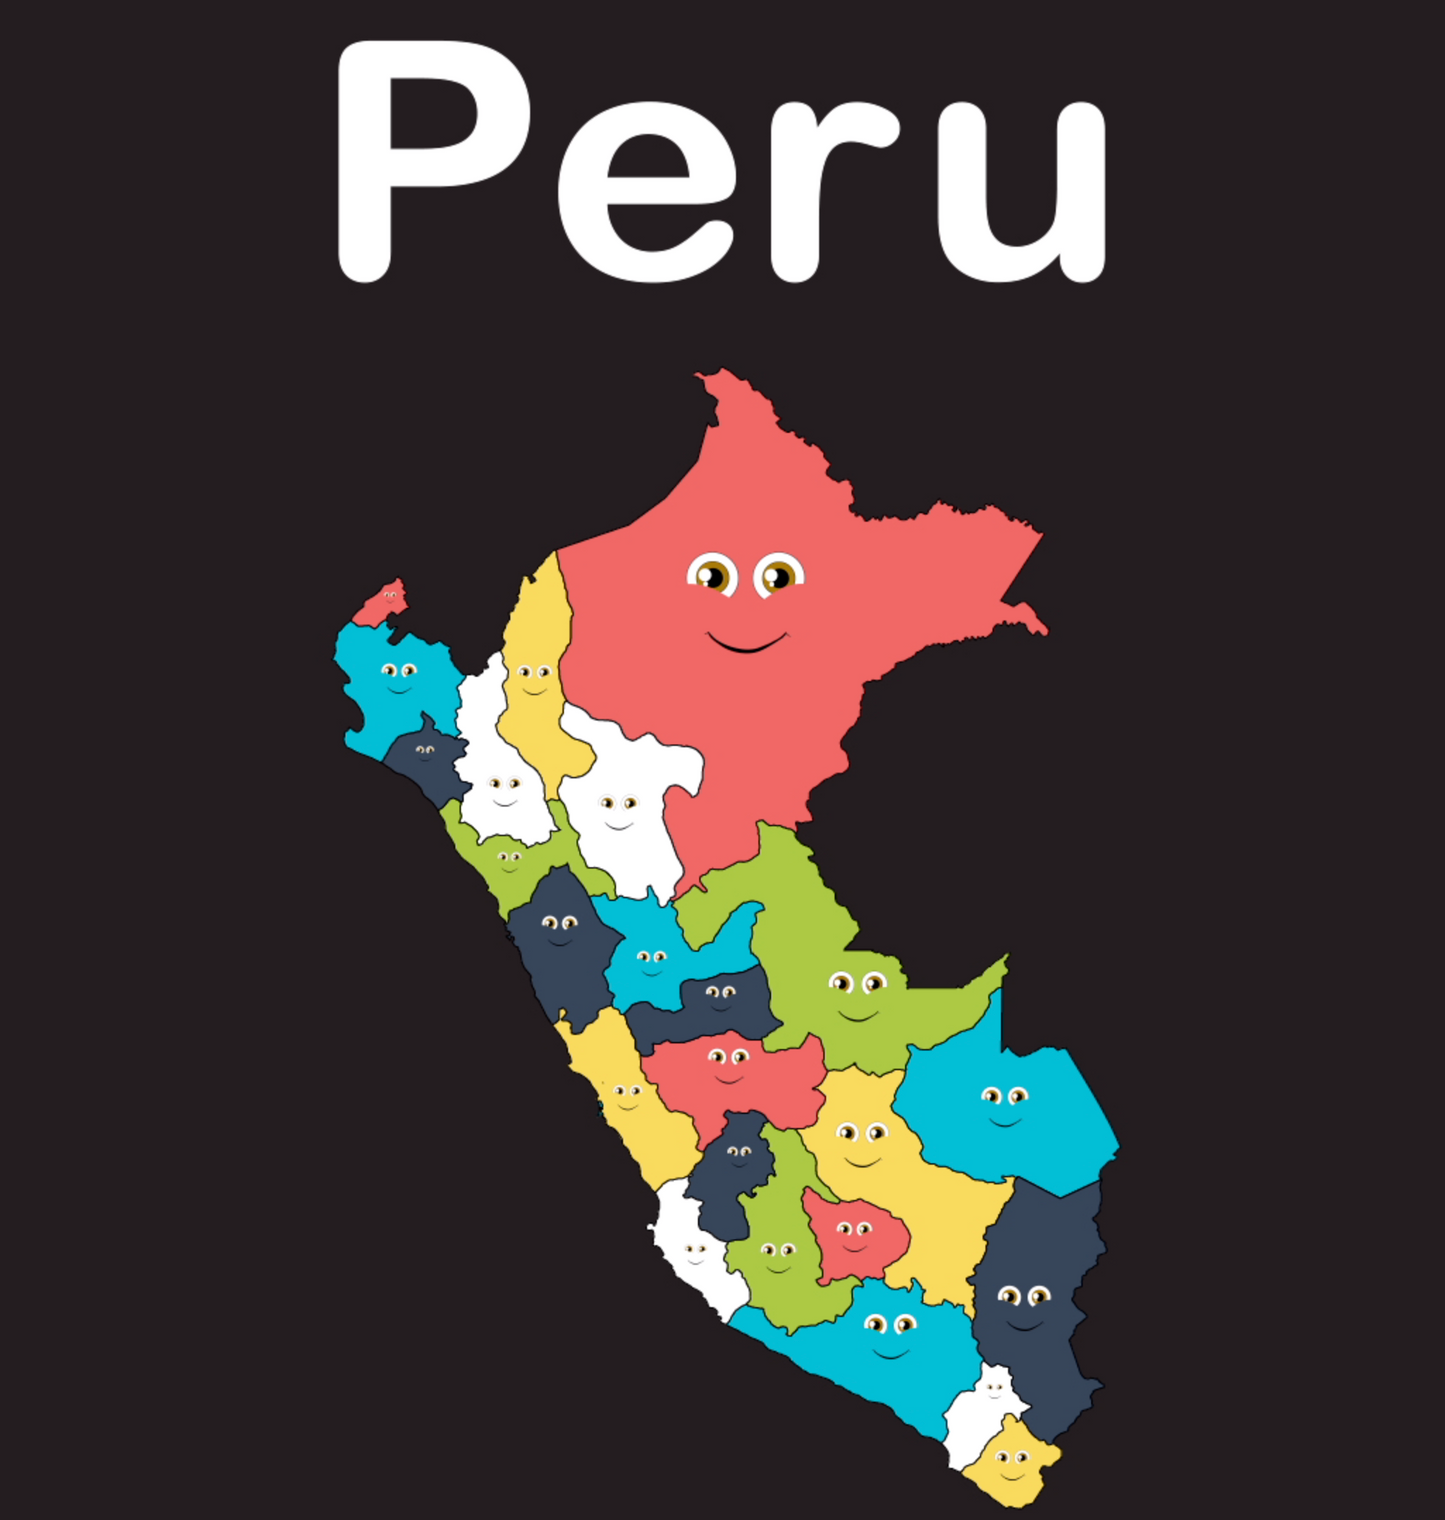 Peru coloring sheet â kids learning tube